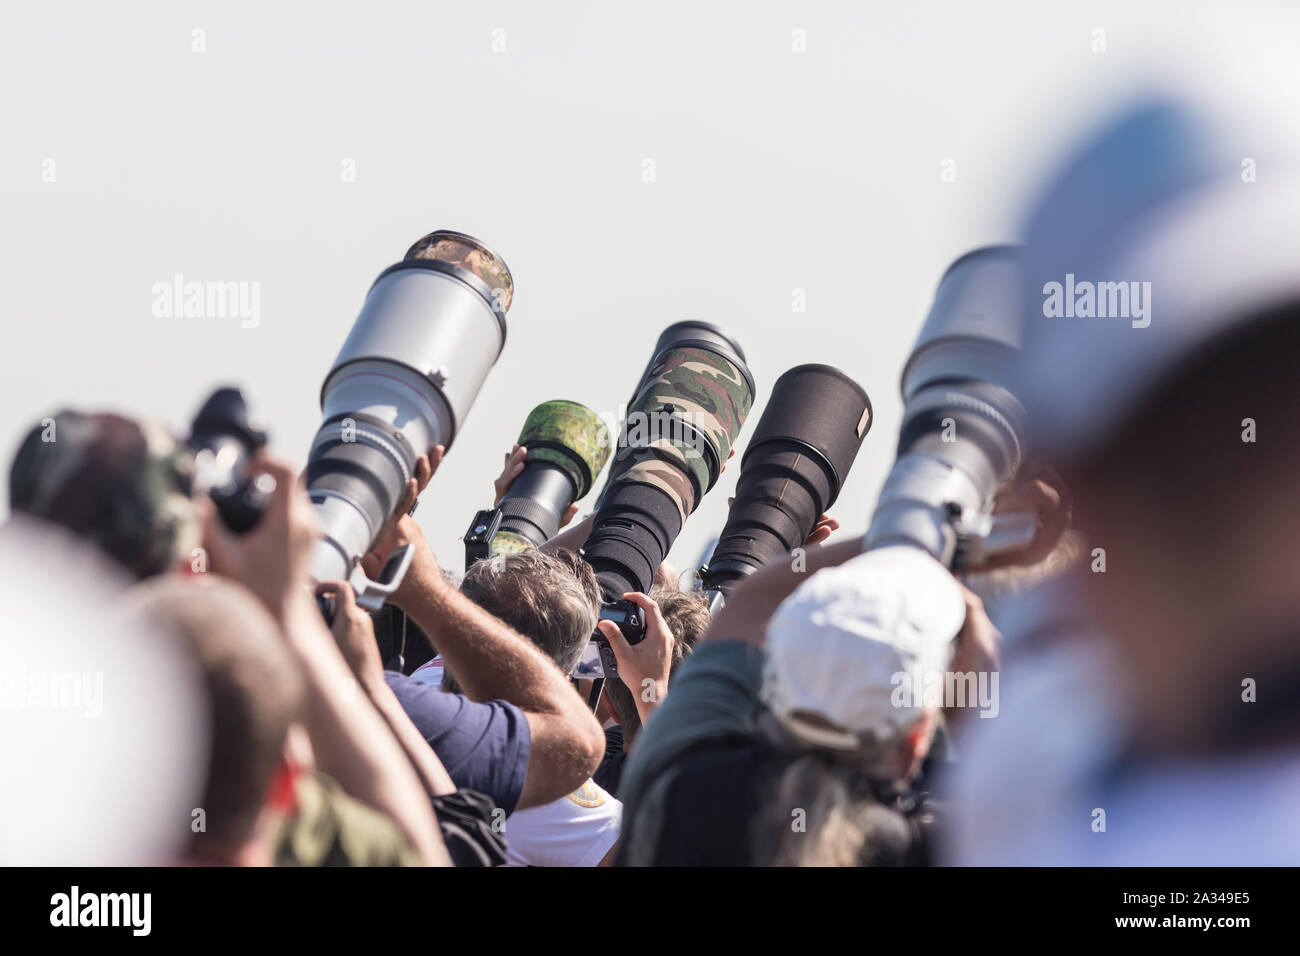 29 agosto 2019 MOSCA, RUSSIA: fotografi di scattare le foto degli aerei - molti obiettivi professionali sono diretti verso l'alto. Metà shot Foto Stock